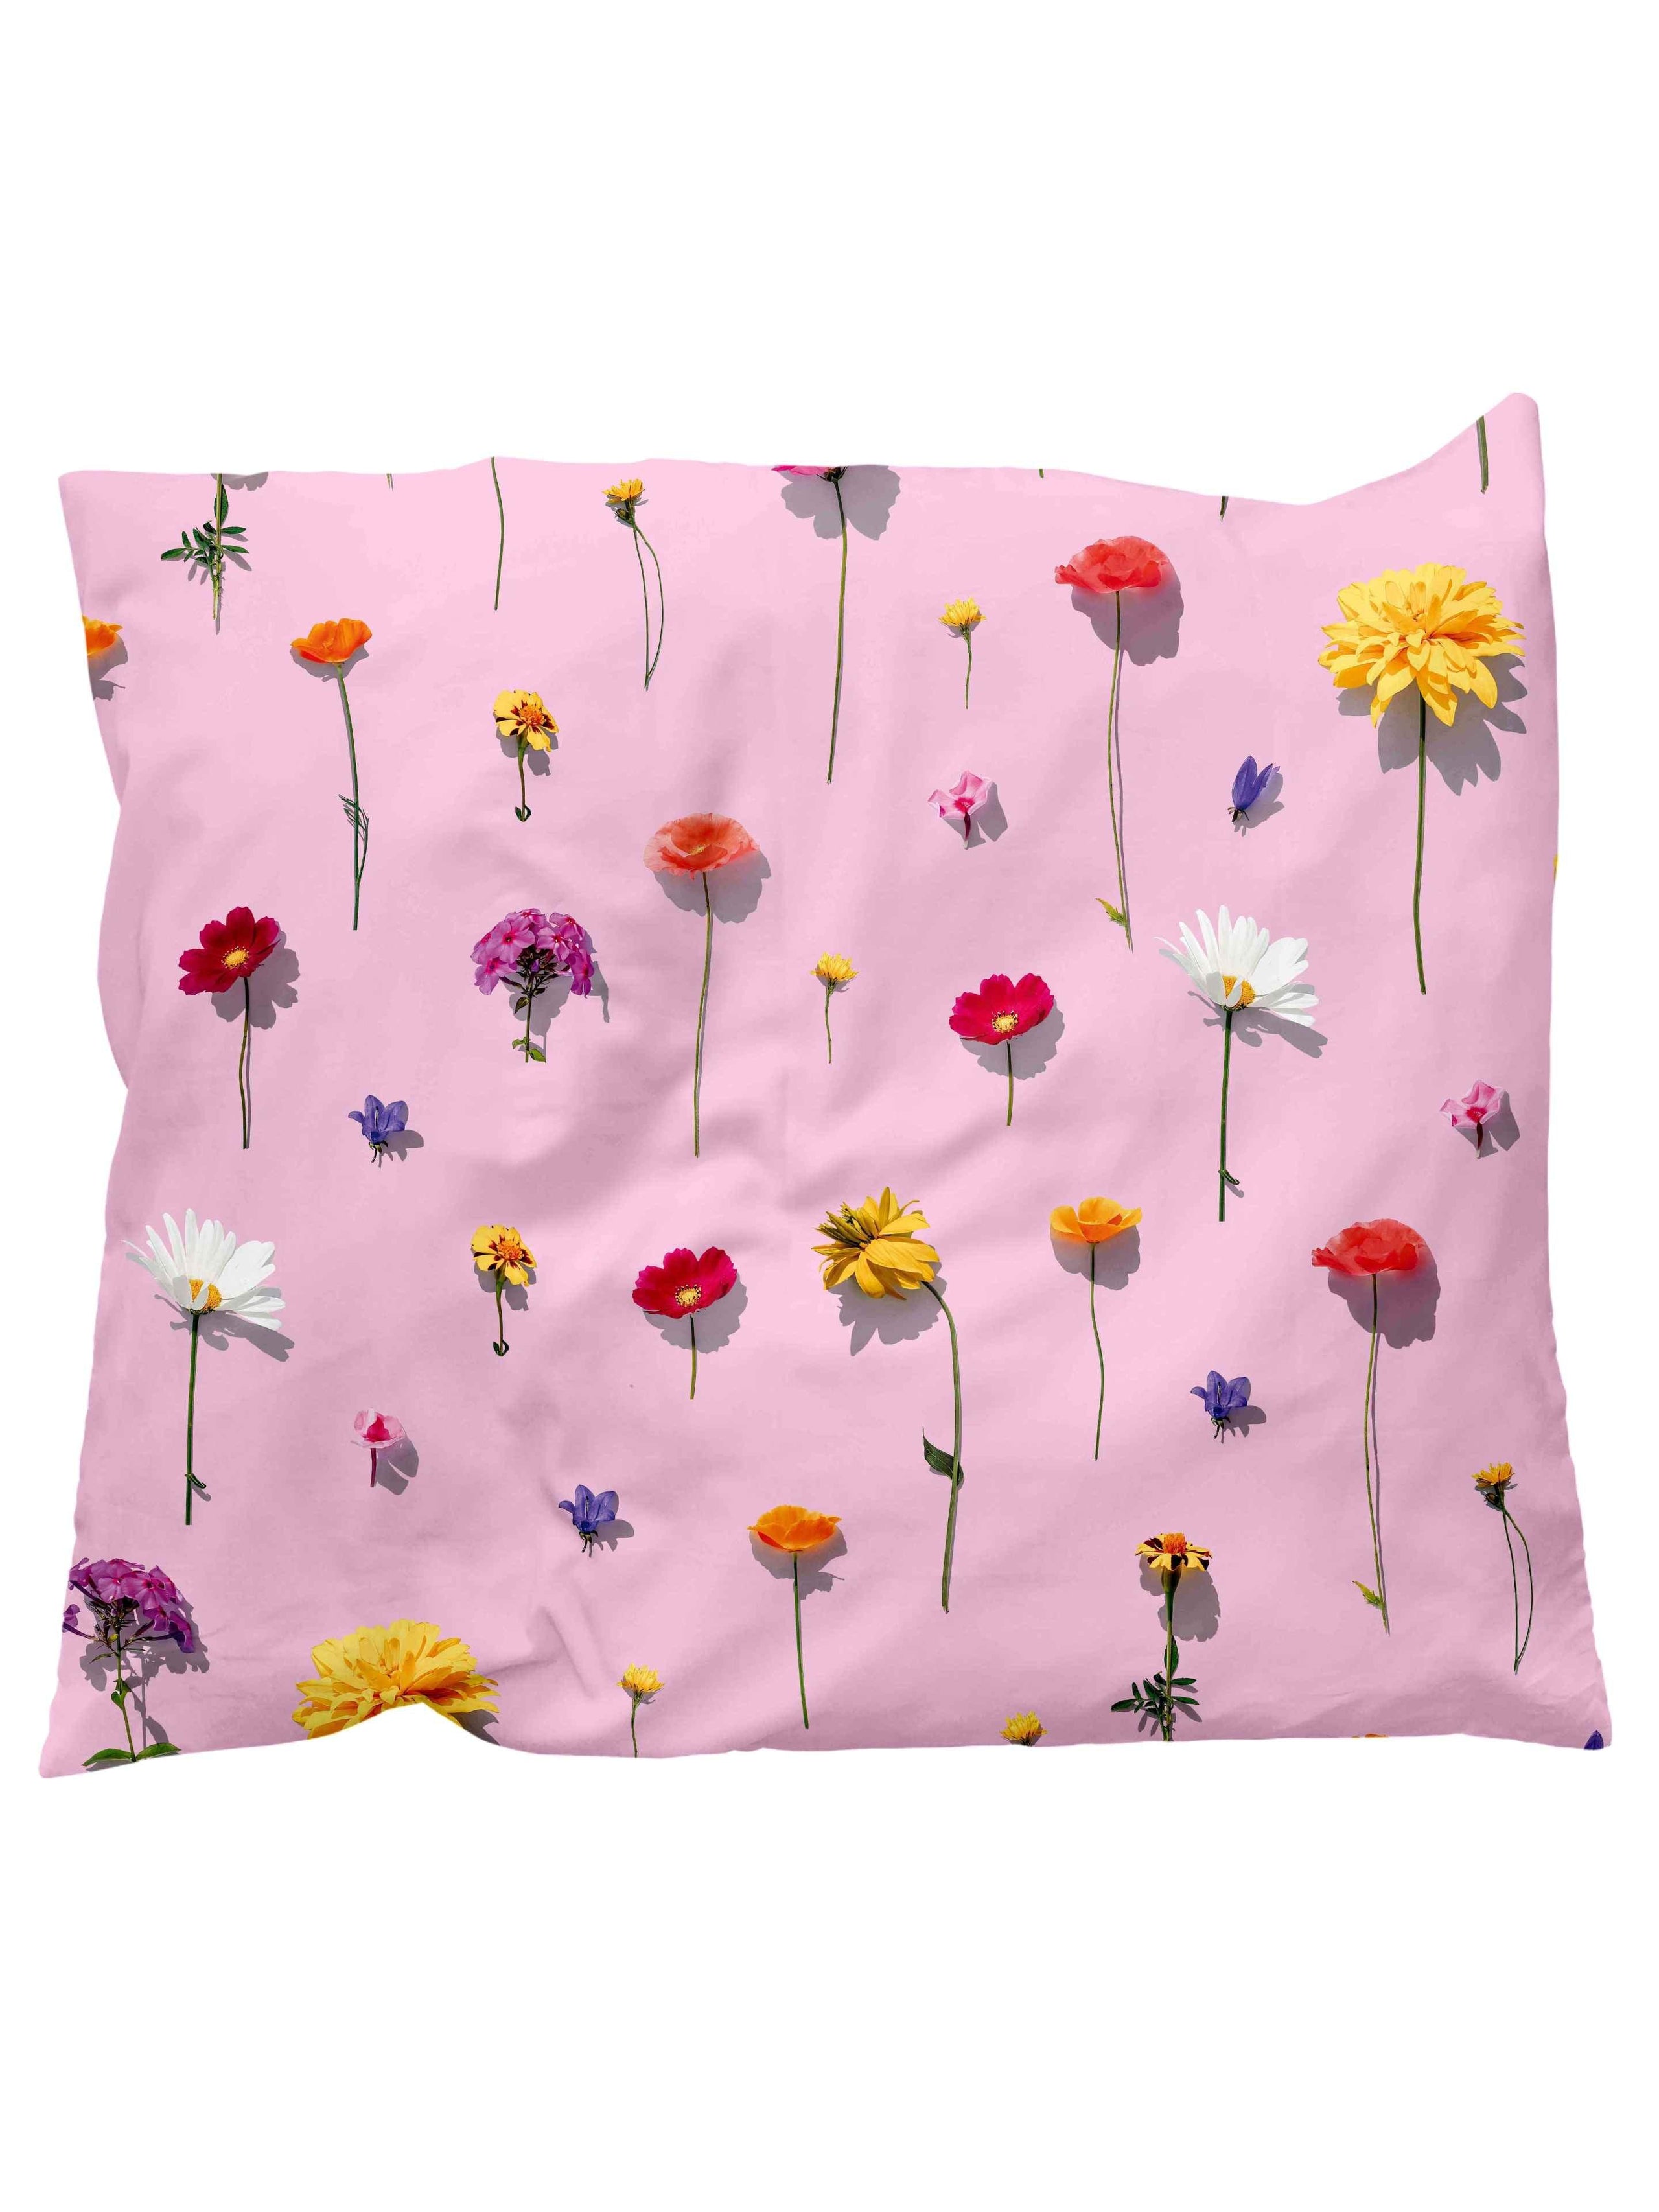 Bloom Pink Pillowcase